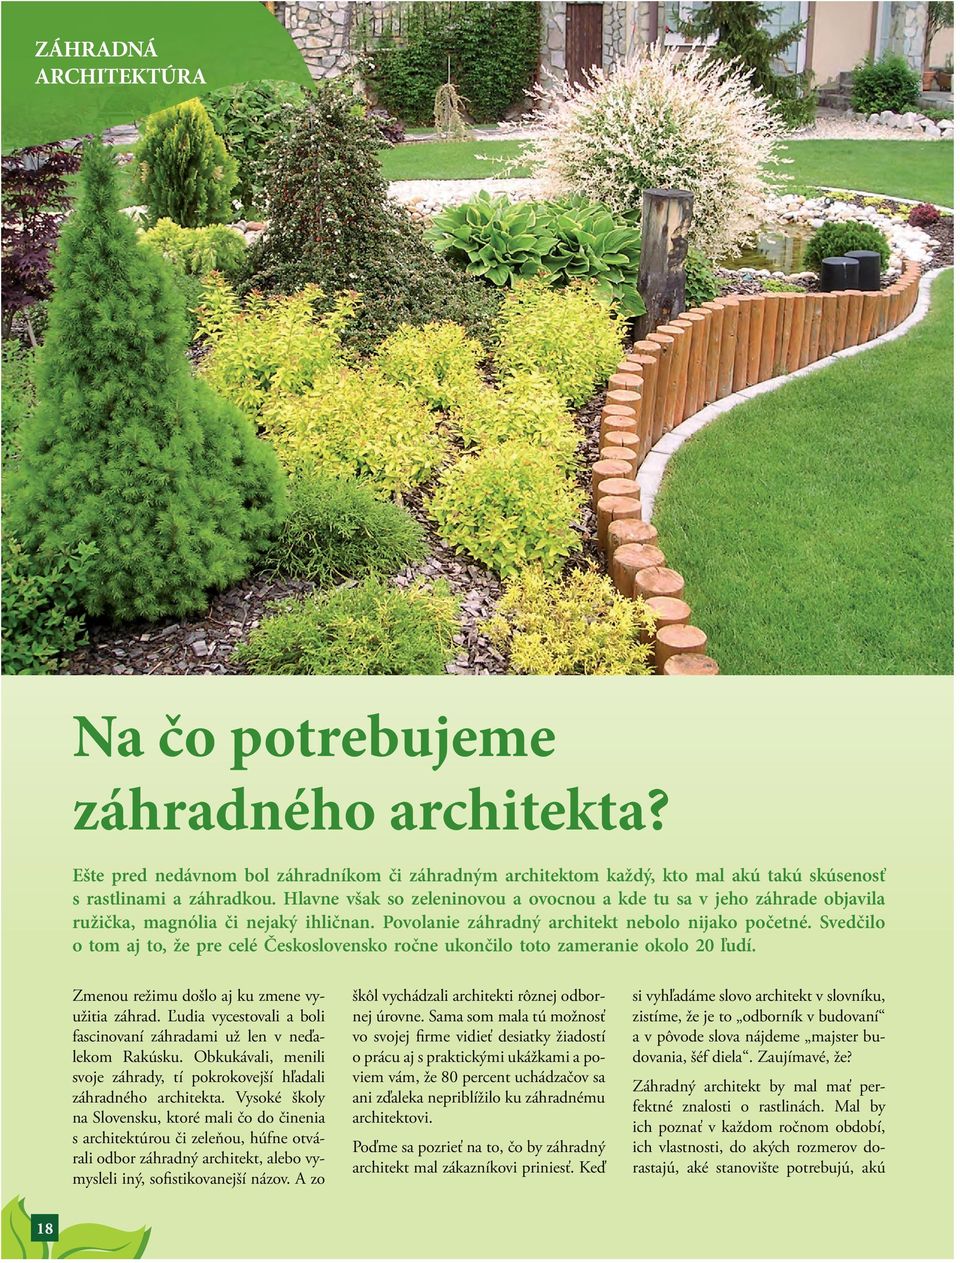 Svedčilo o tom aj to, že pre celé Československo ročne ukončilo toto zameranie okolo 20 ľudí. Zmenou režimu došlo aj ku zmene využitia záhrad.